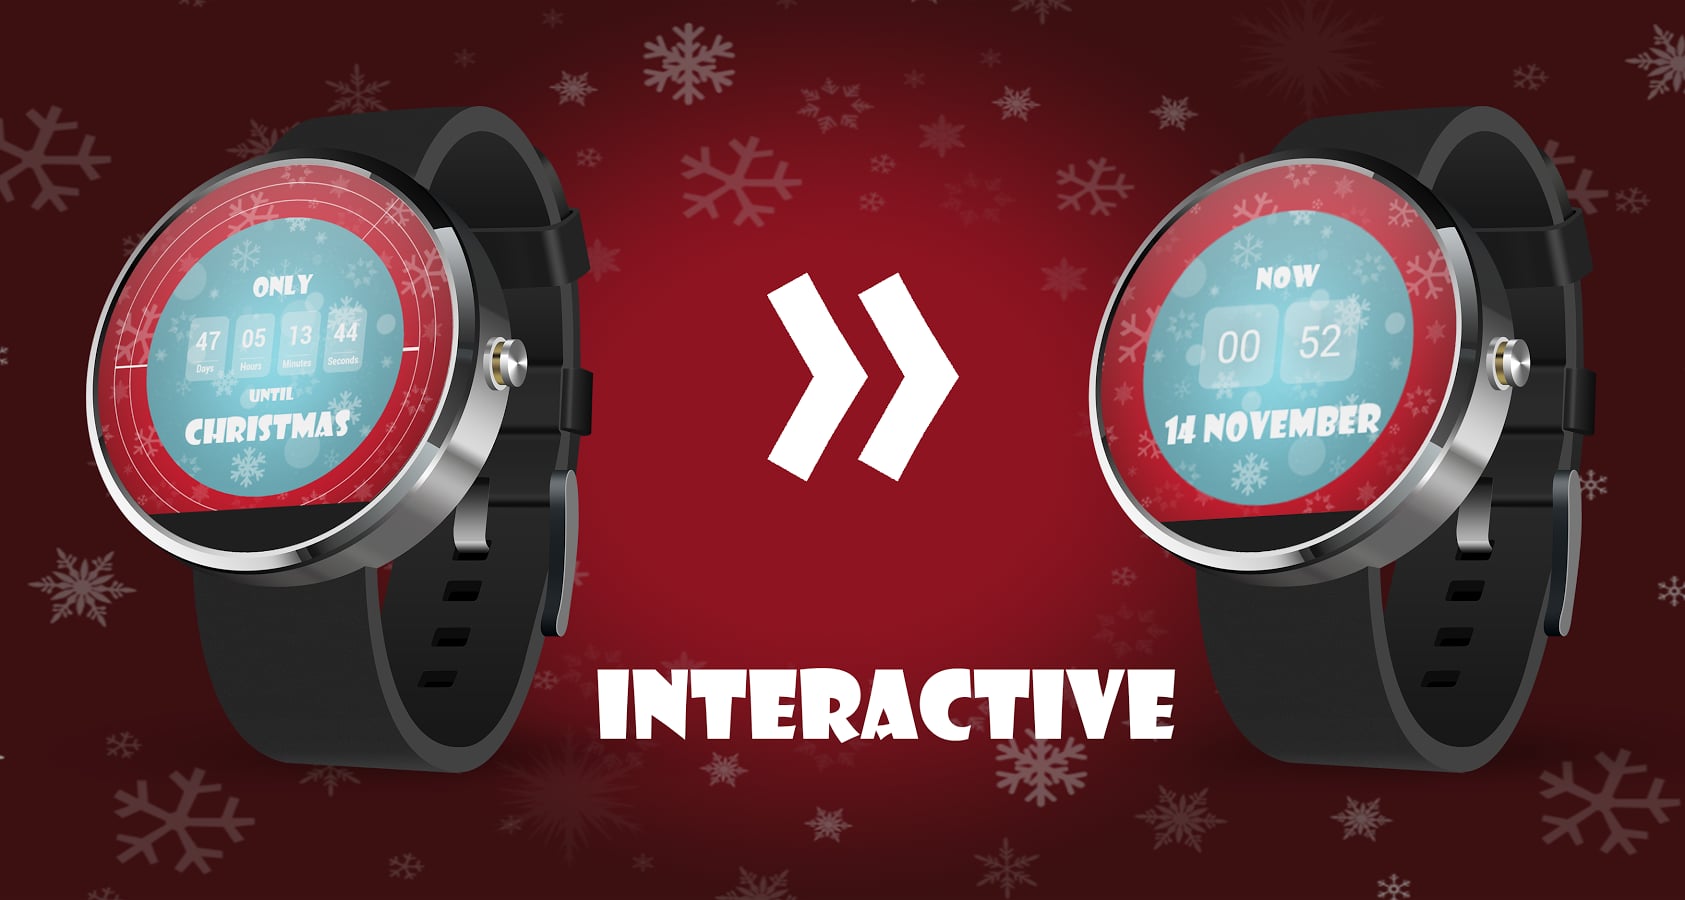 互动圣诞节倒计时表盘:Christmas Countdown Interactive Watch Face截图1